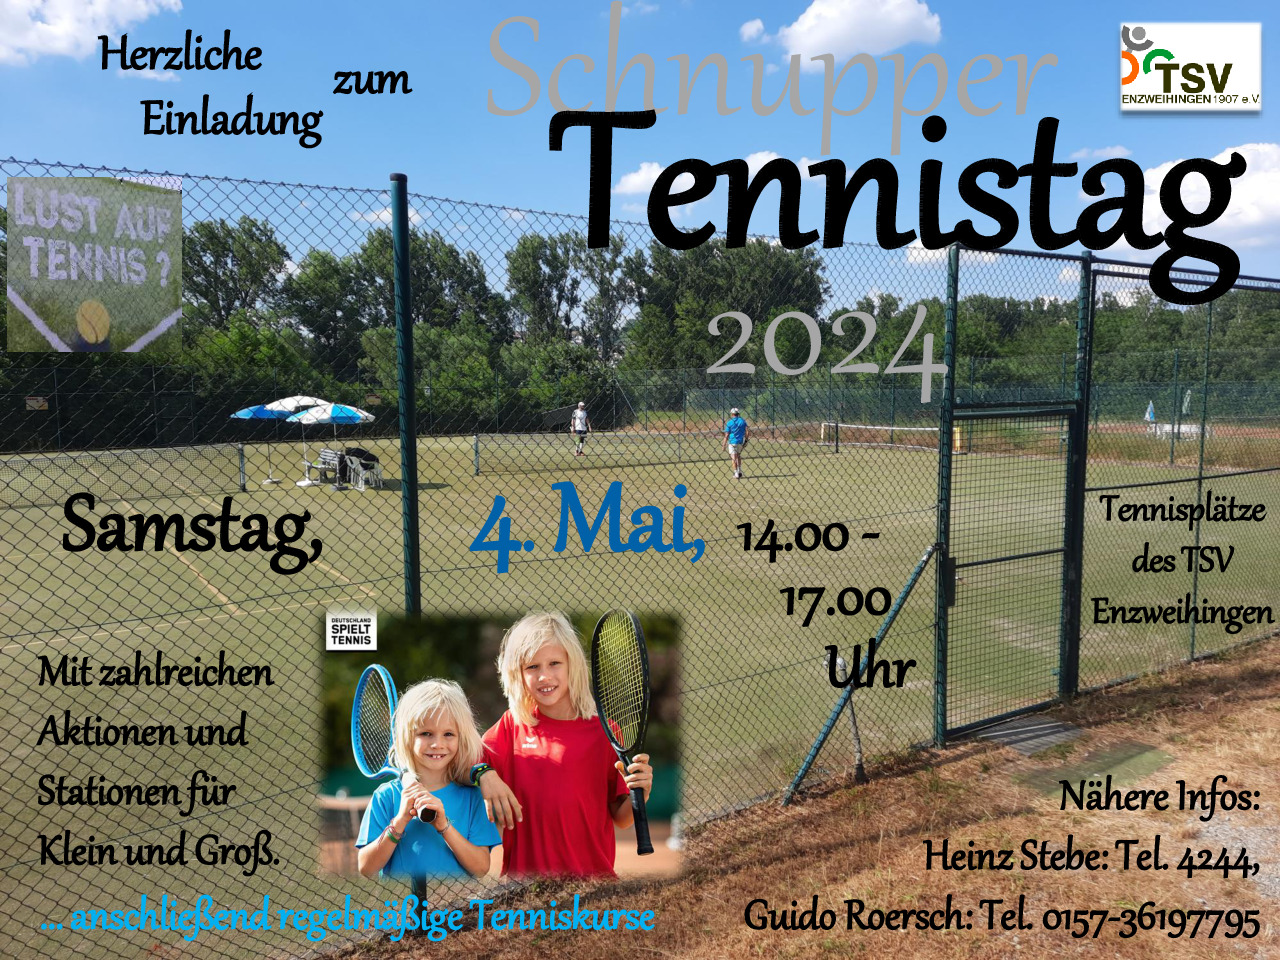 Einladung zum Schnupper Tennistag am 04. Mai 2024